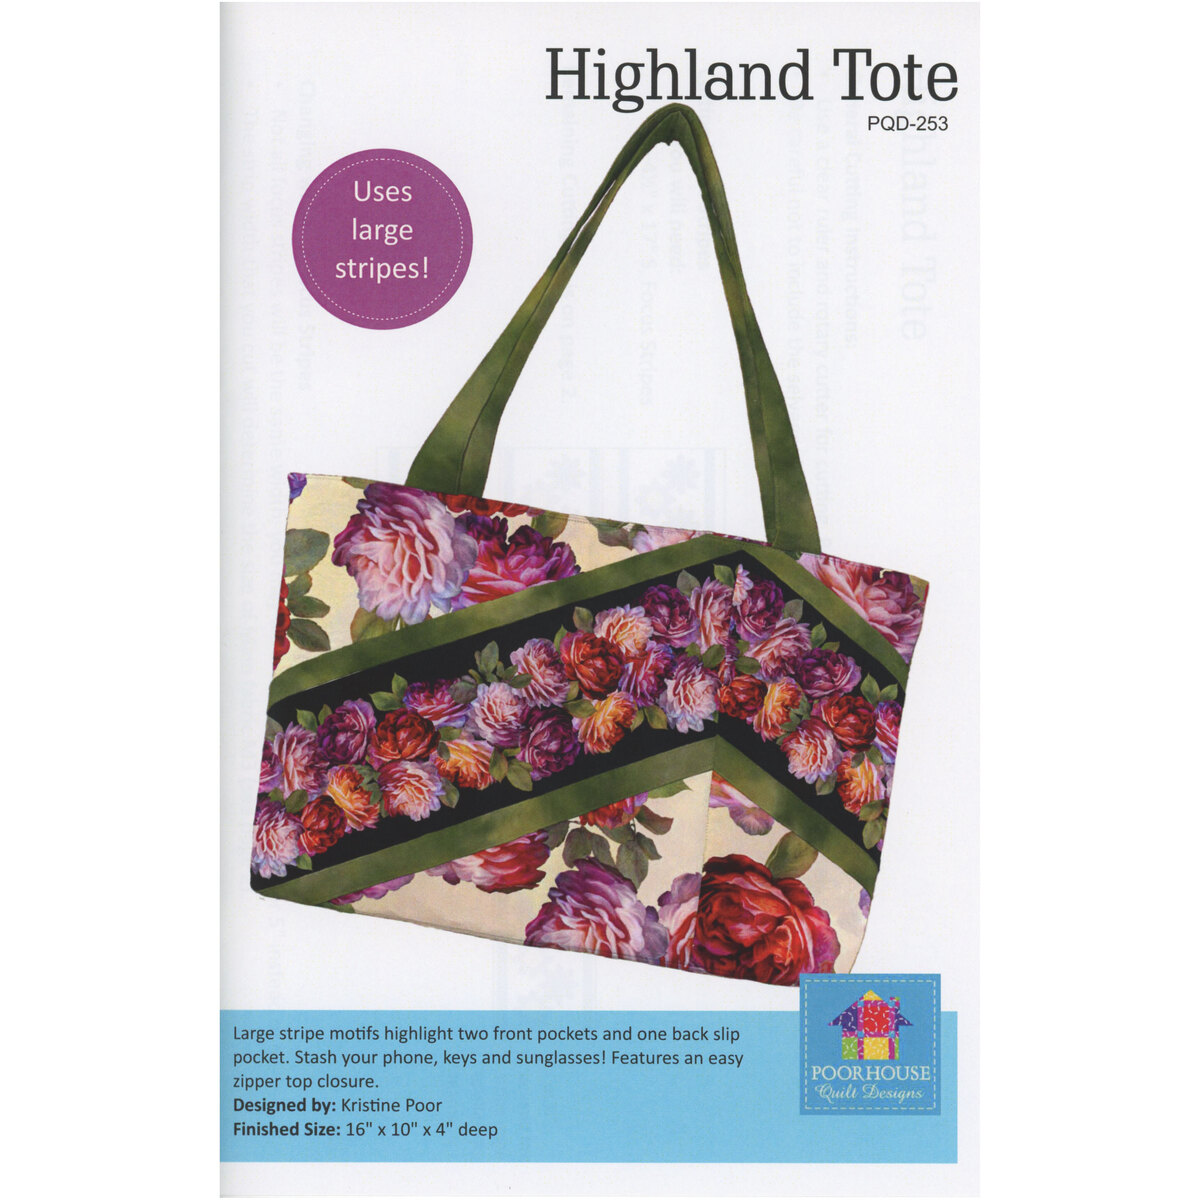 Kitchen rag bag - FREE sewing pattern & tutorial - Sew Modern Bags